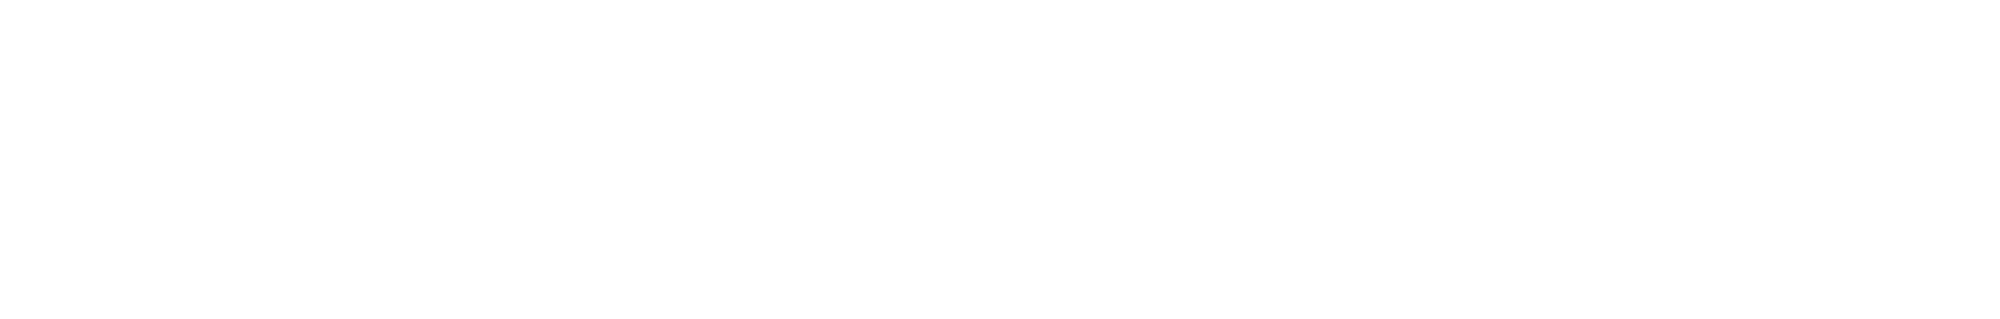 traveller-com-au-logo-vector